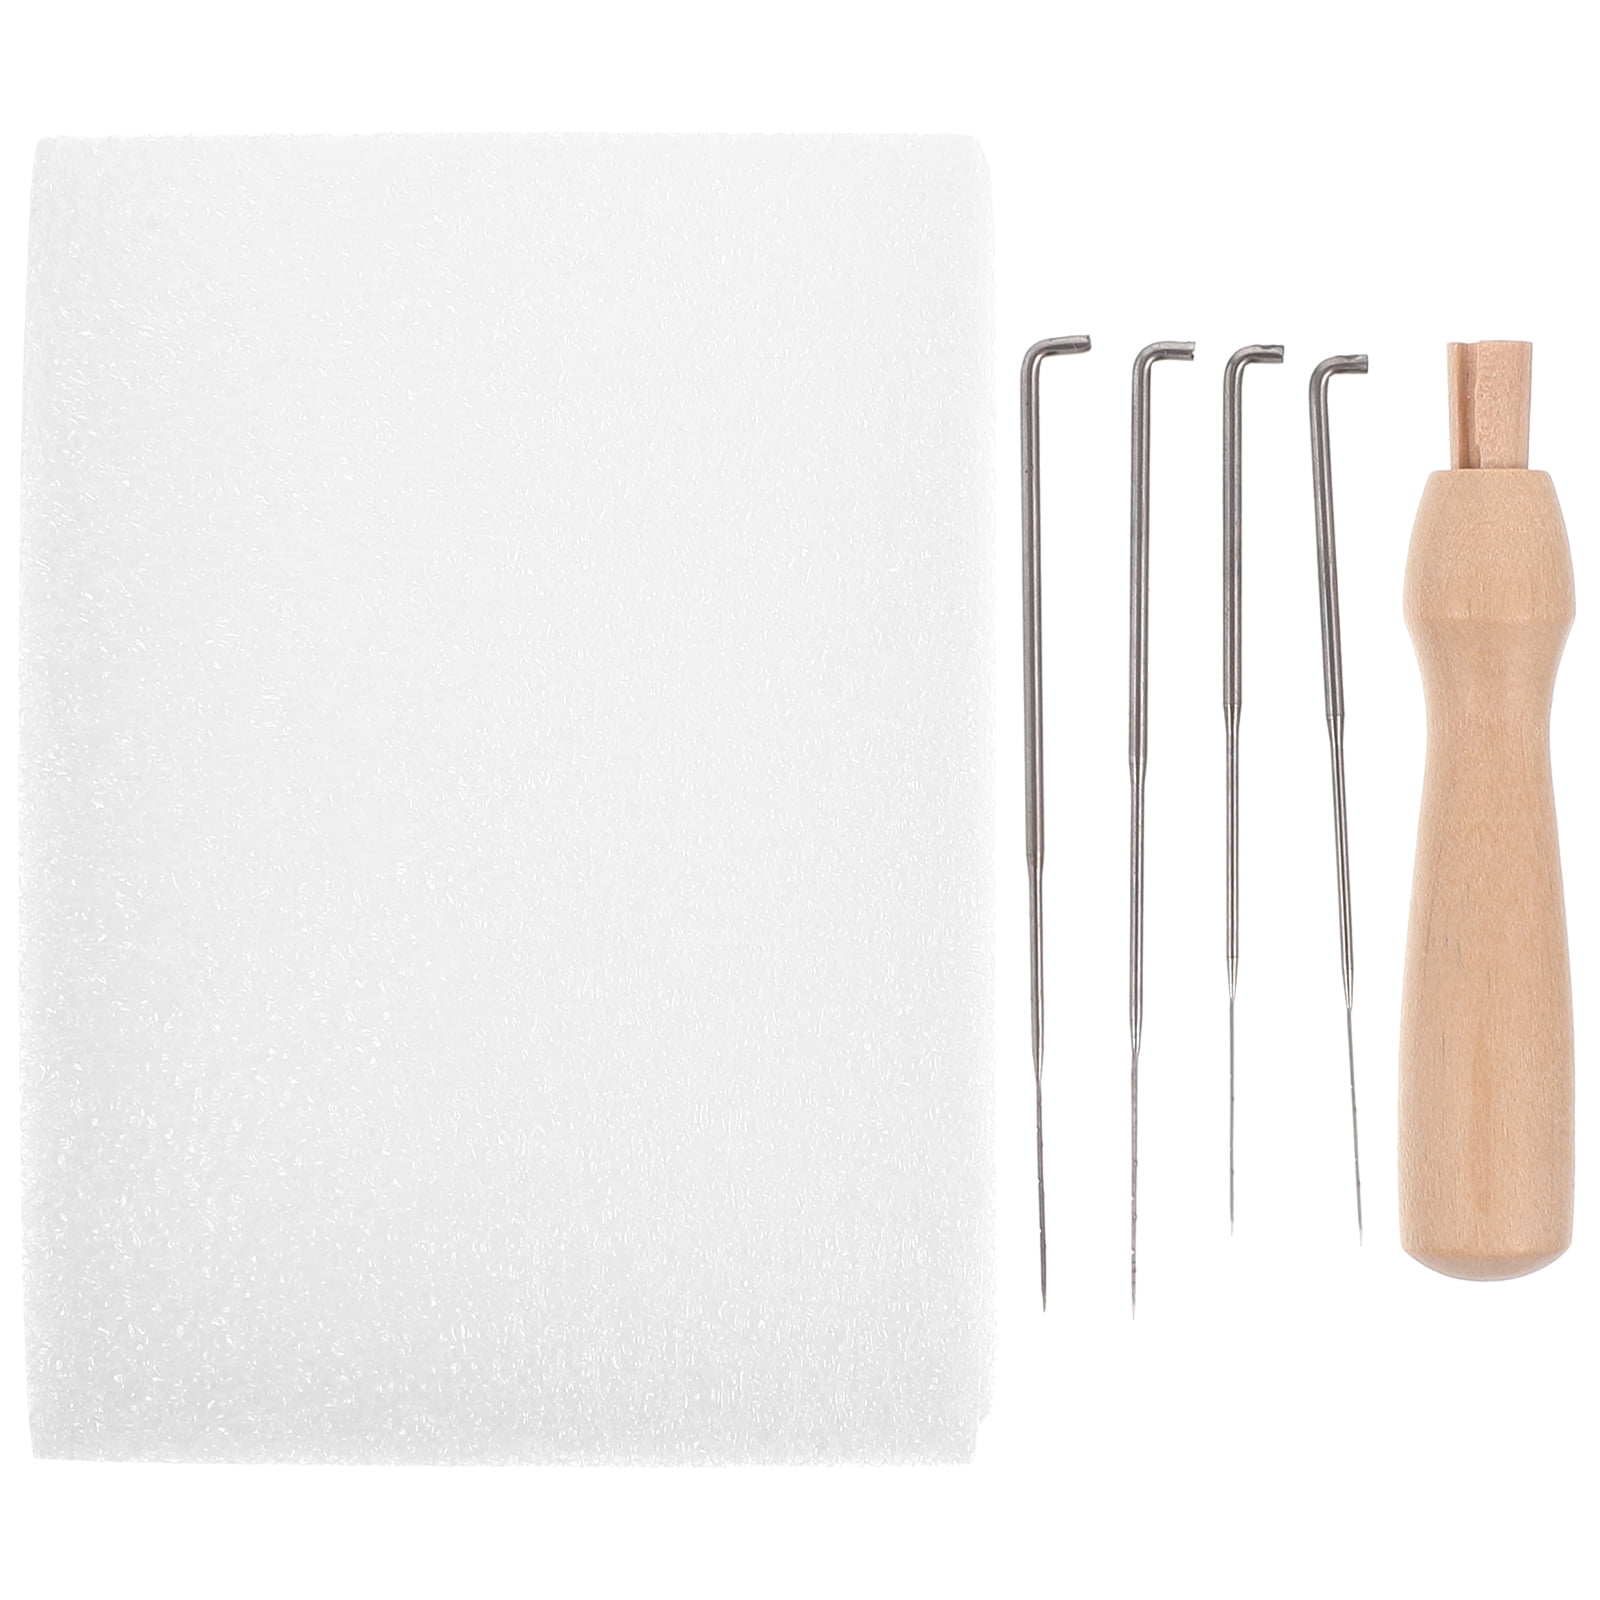 Homemaxs 1 Set of Needle Felting Pad DIY Crafts Needles Professional Needle Work Pad Felting Kit, Size: 11X8CM